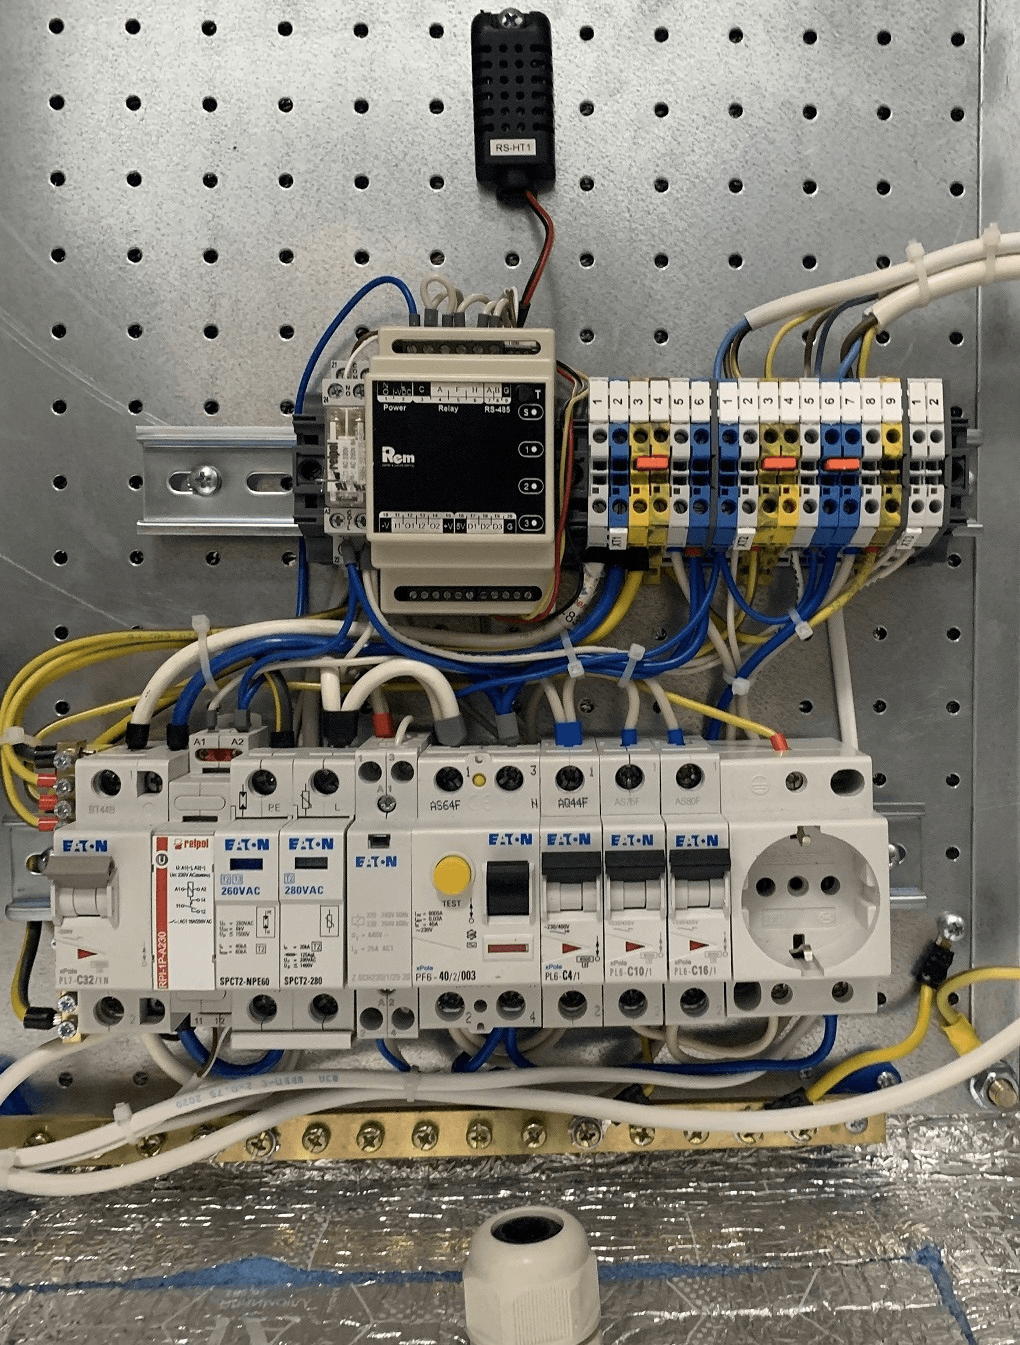 Шкаф всепогодный напольный 24U (Ш1000 × Г900), комплектация Т1 с контроллером MC1 и датчиками от ЦМО